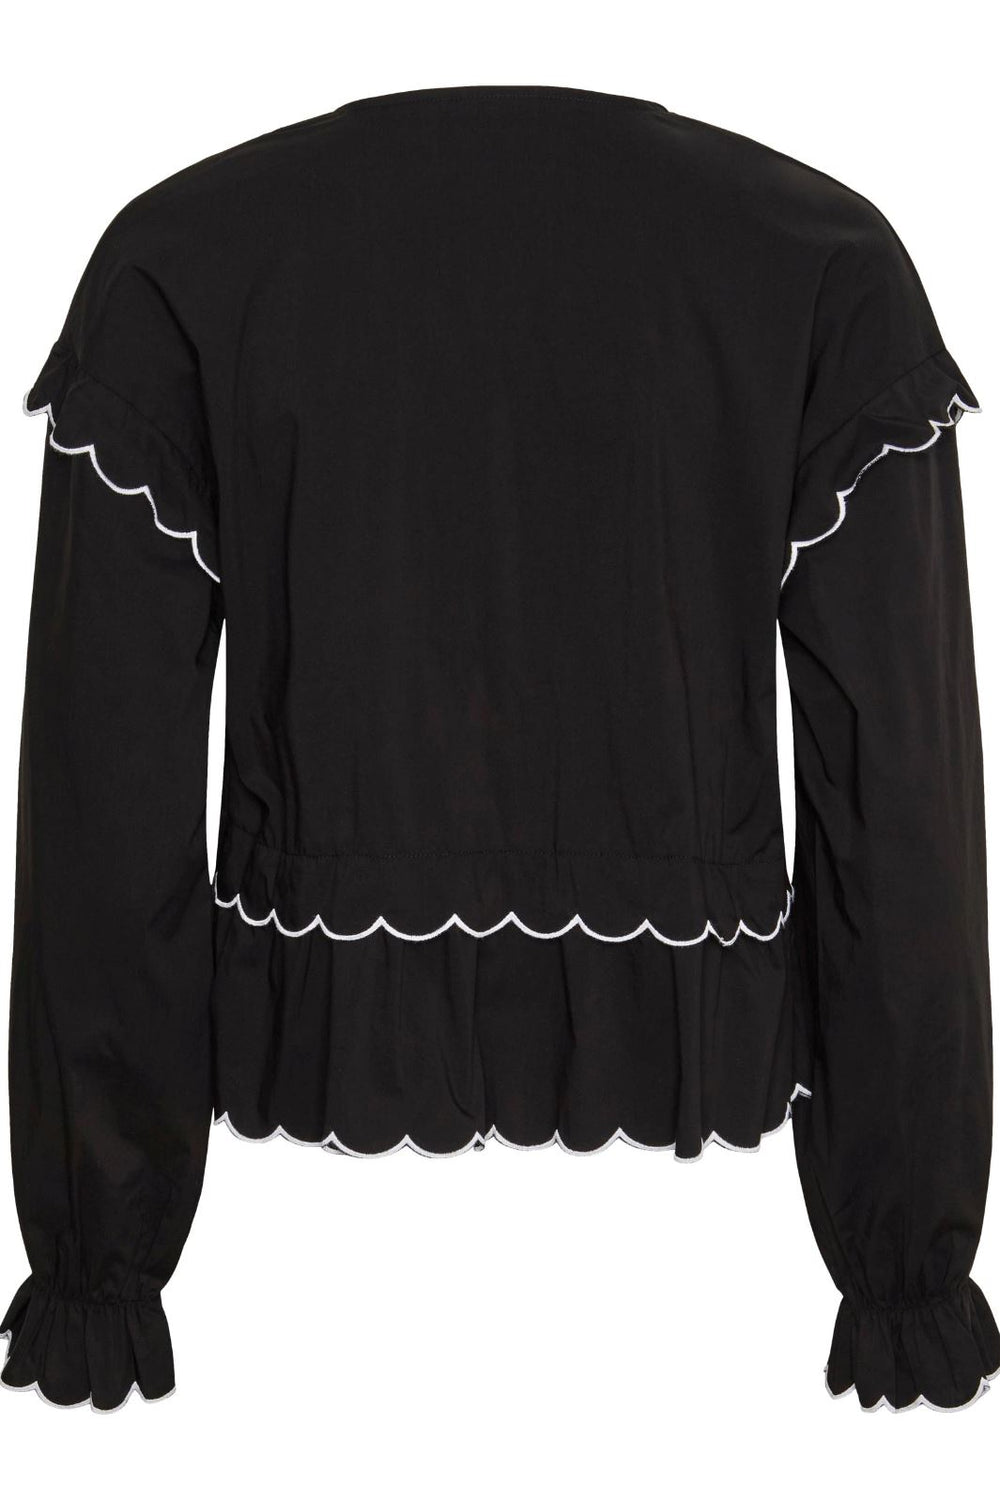 Pieces - Pcluna Ls Top - Black / Bright White Skjorter 